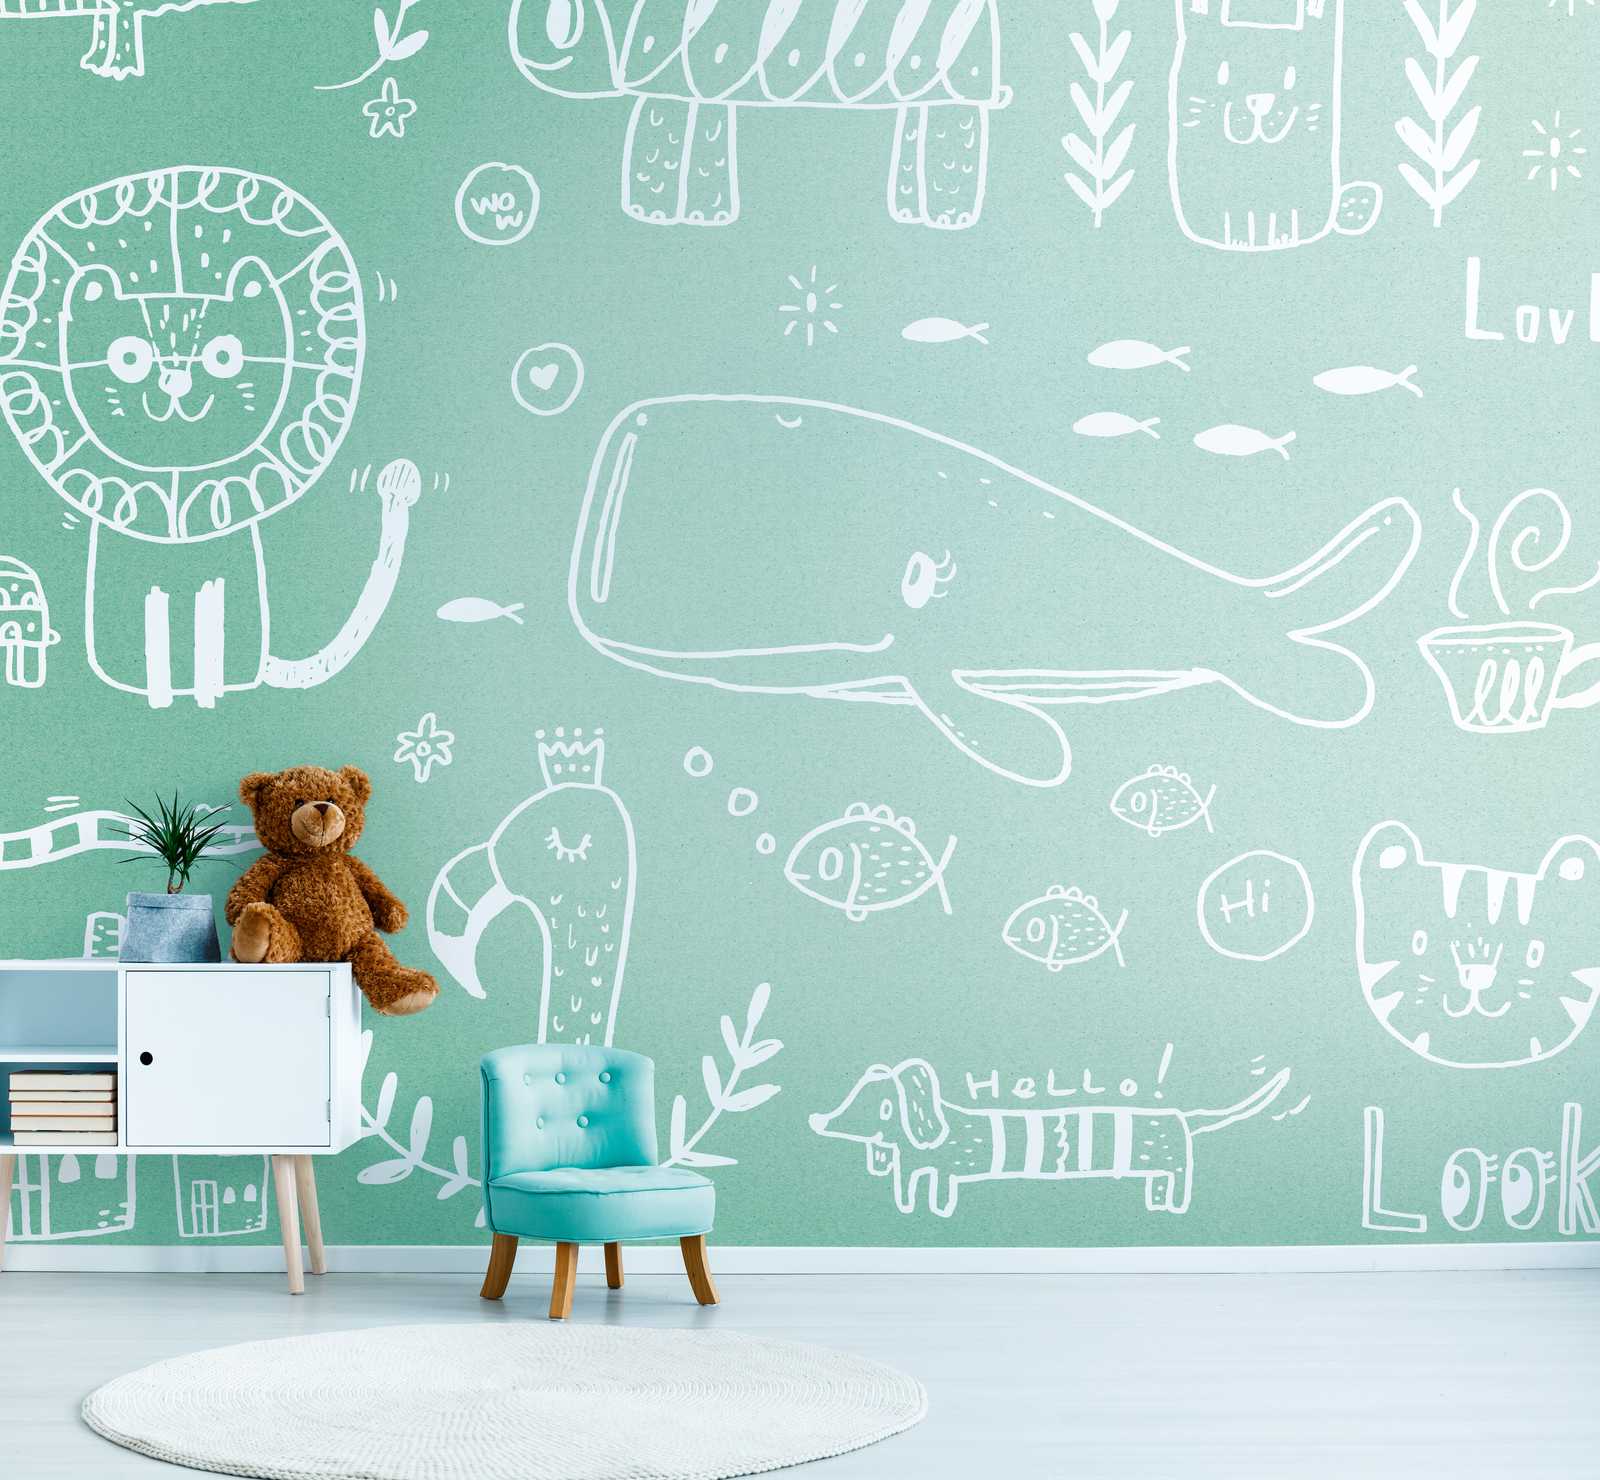             Papeles pintados novedad - papel pintado motivo habitación infantil garabatos animales, verde menta
        